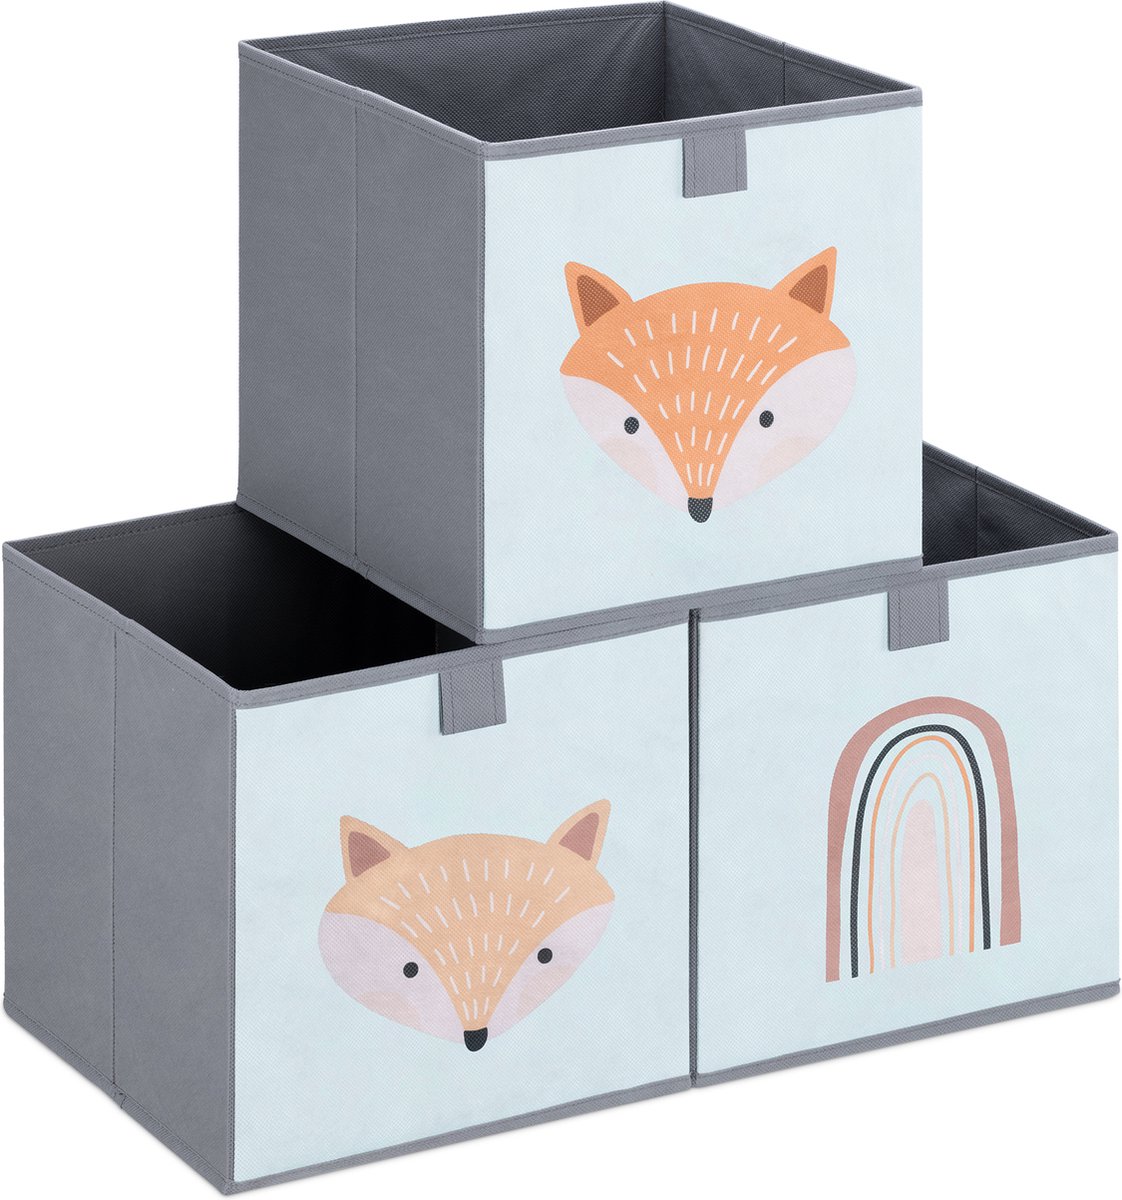 Navaris opbergdozen voor kinderen - Set van 3 opbergboxen met treklus - 28 x 28 x 28 cm - Opvouwbaar - Opbergmanden in mintgroen/grijs met vos